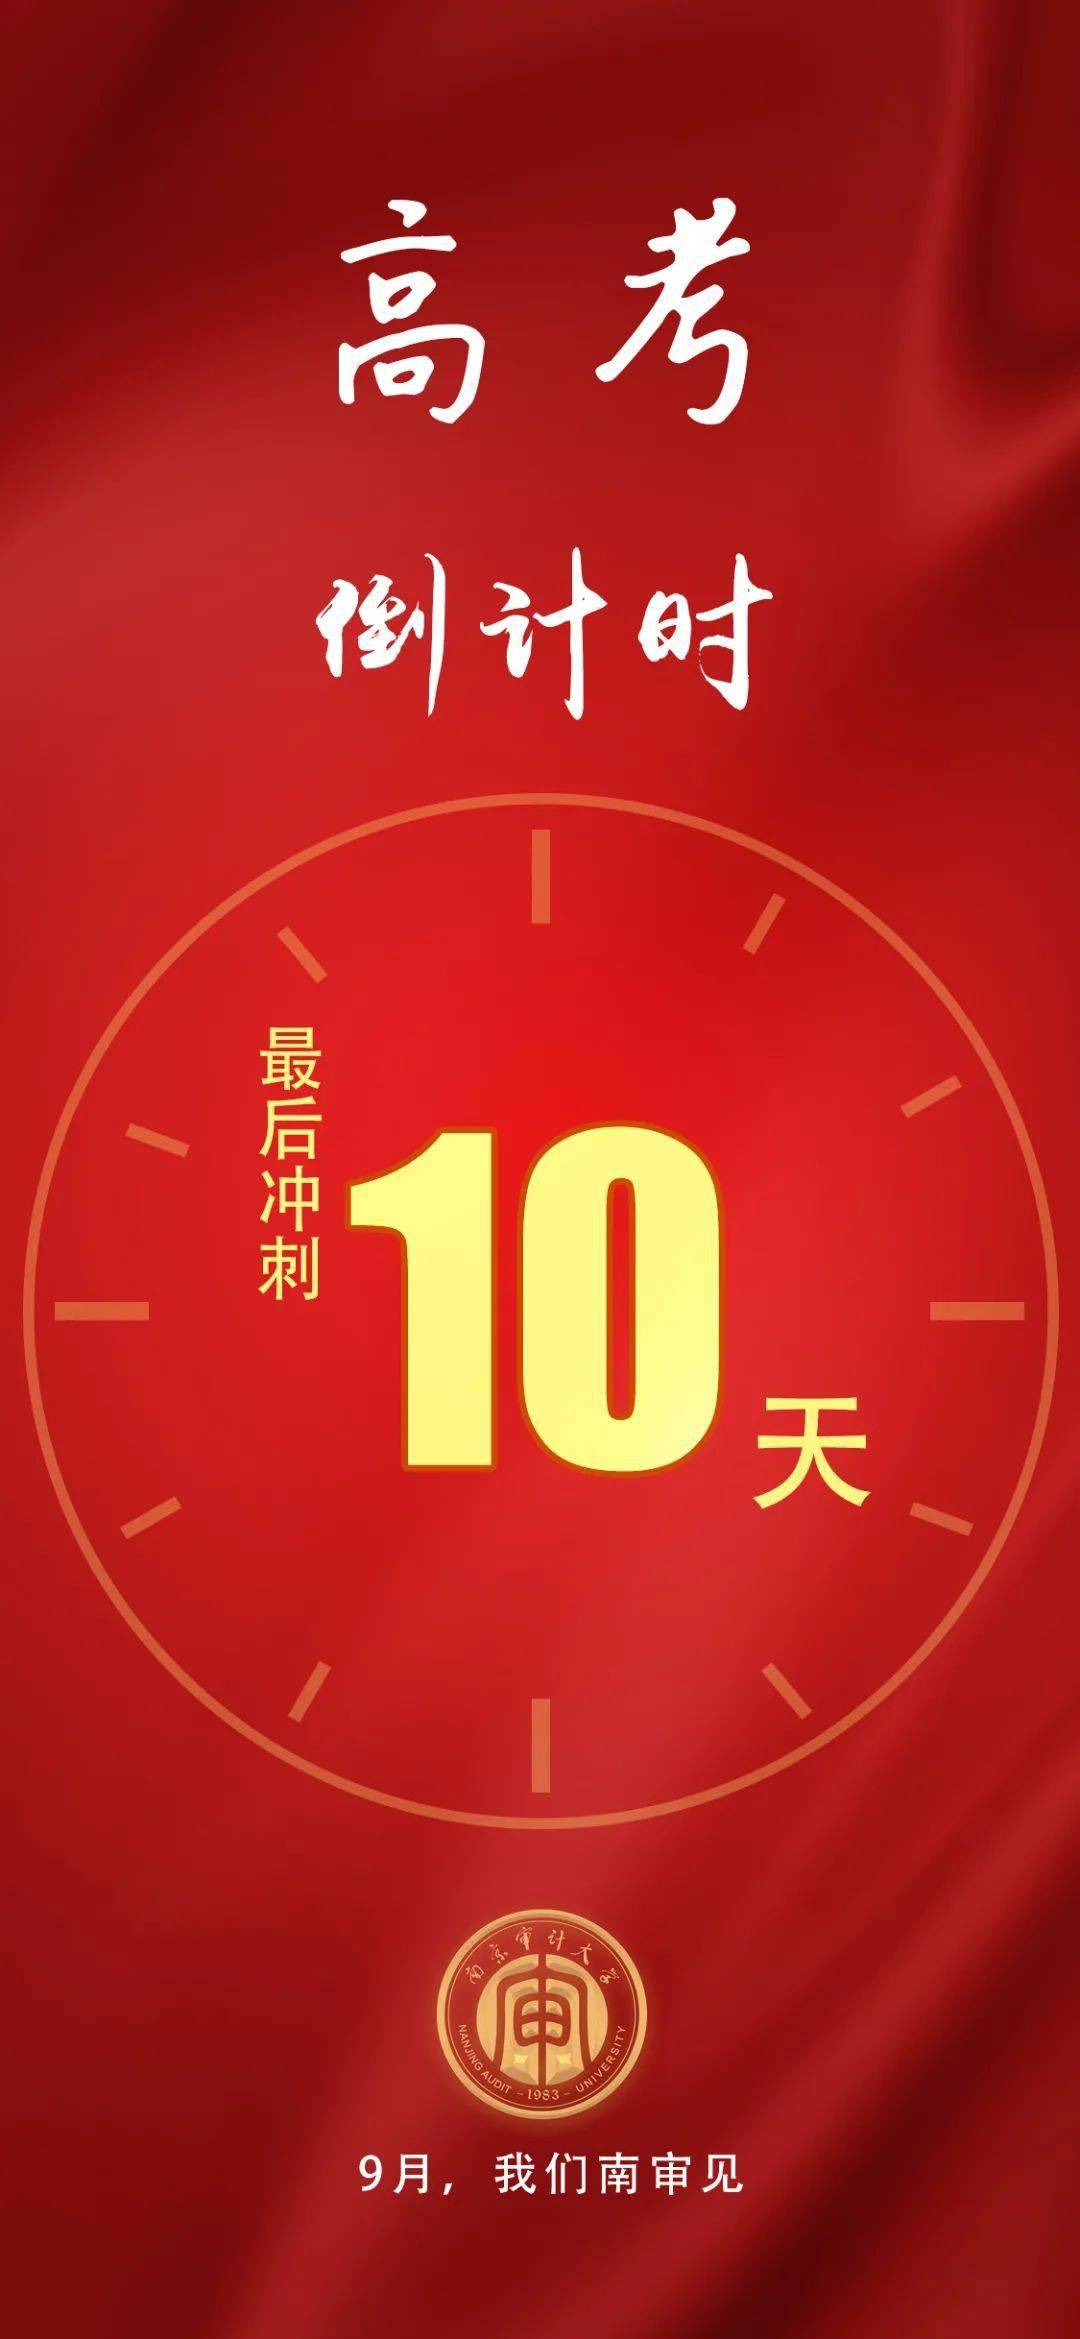 高考倒计时10天欢迎报考南京审计大学